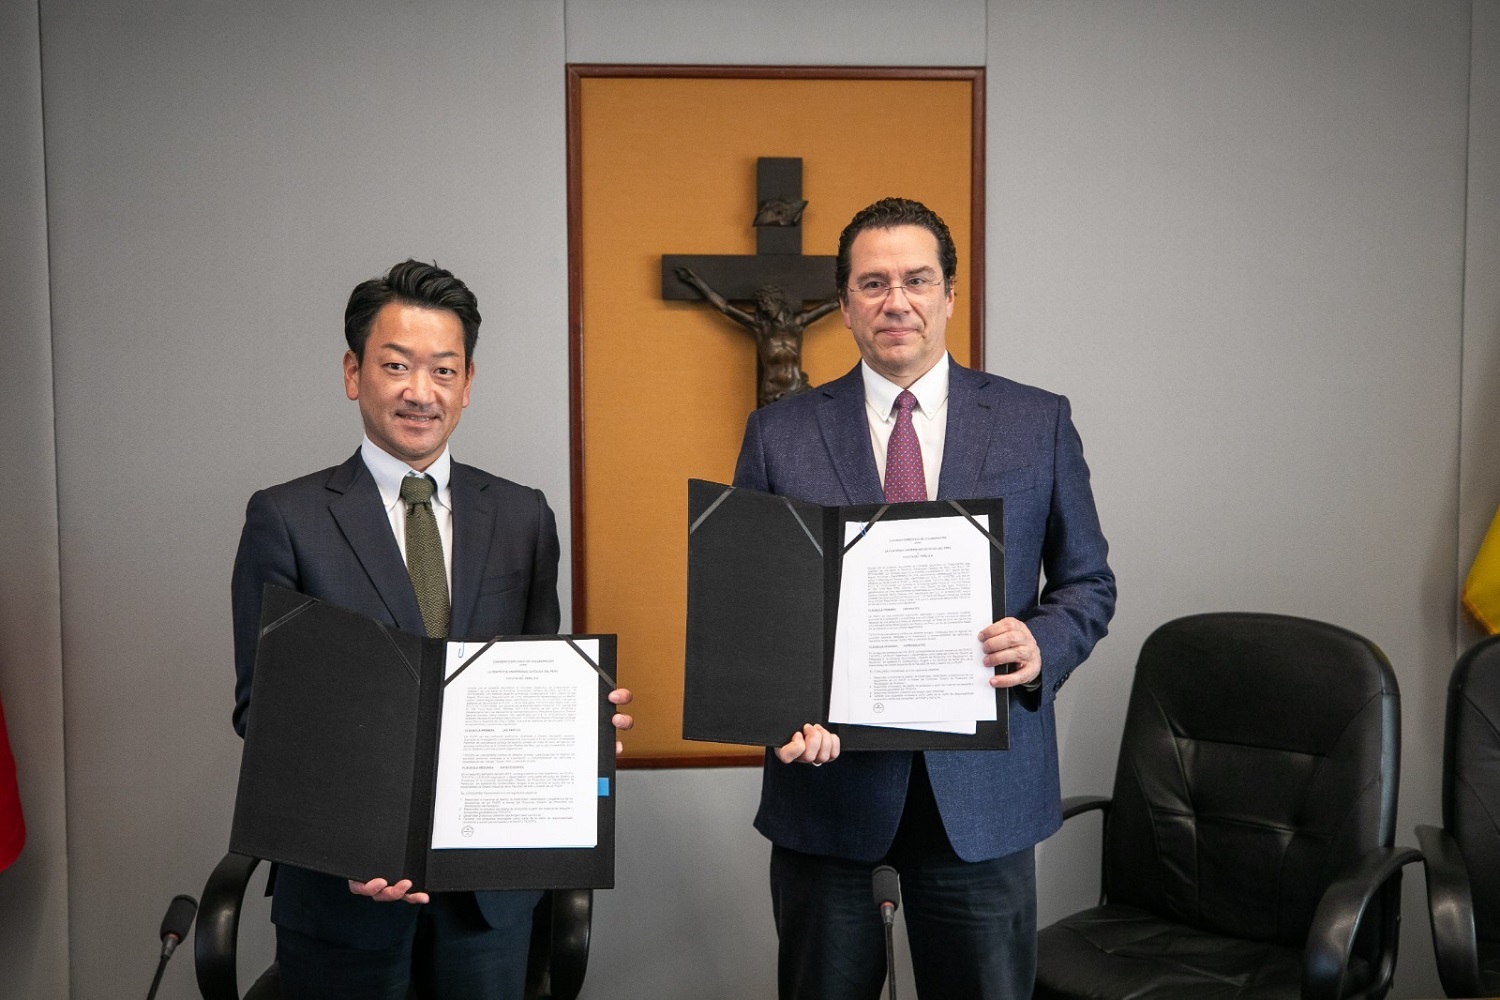 Convenio entre la PUCP y Toyota, permitirá utilizar materiales de descarte y autopartes den proyectos de diseño ecoamigables en el país.